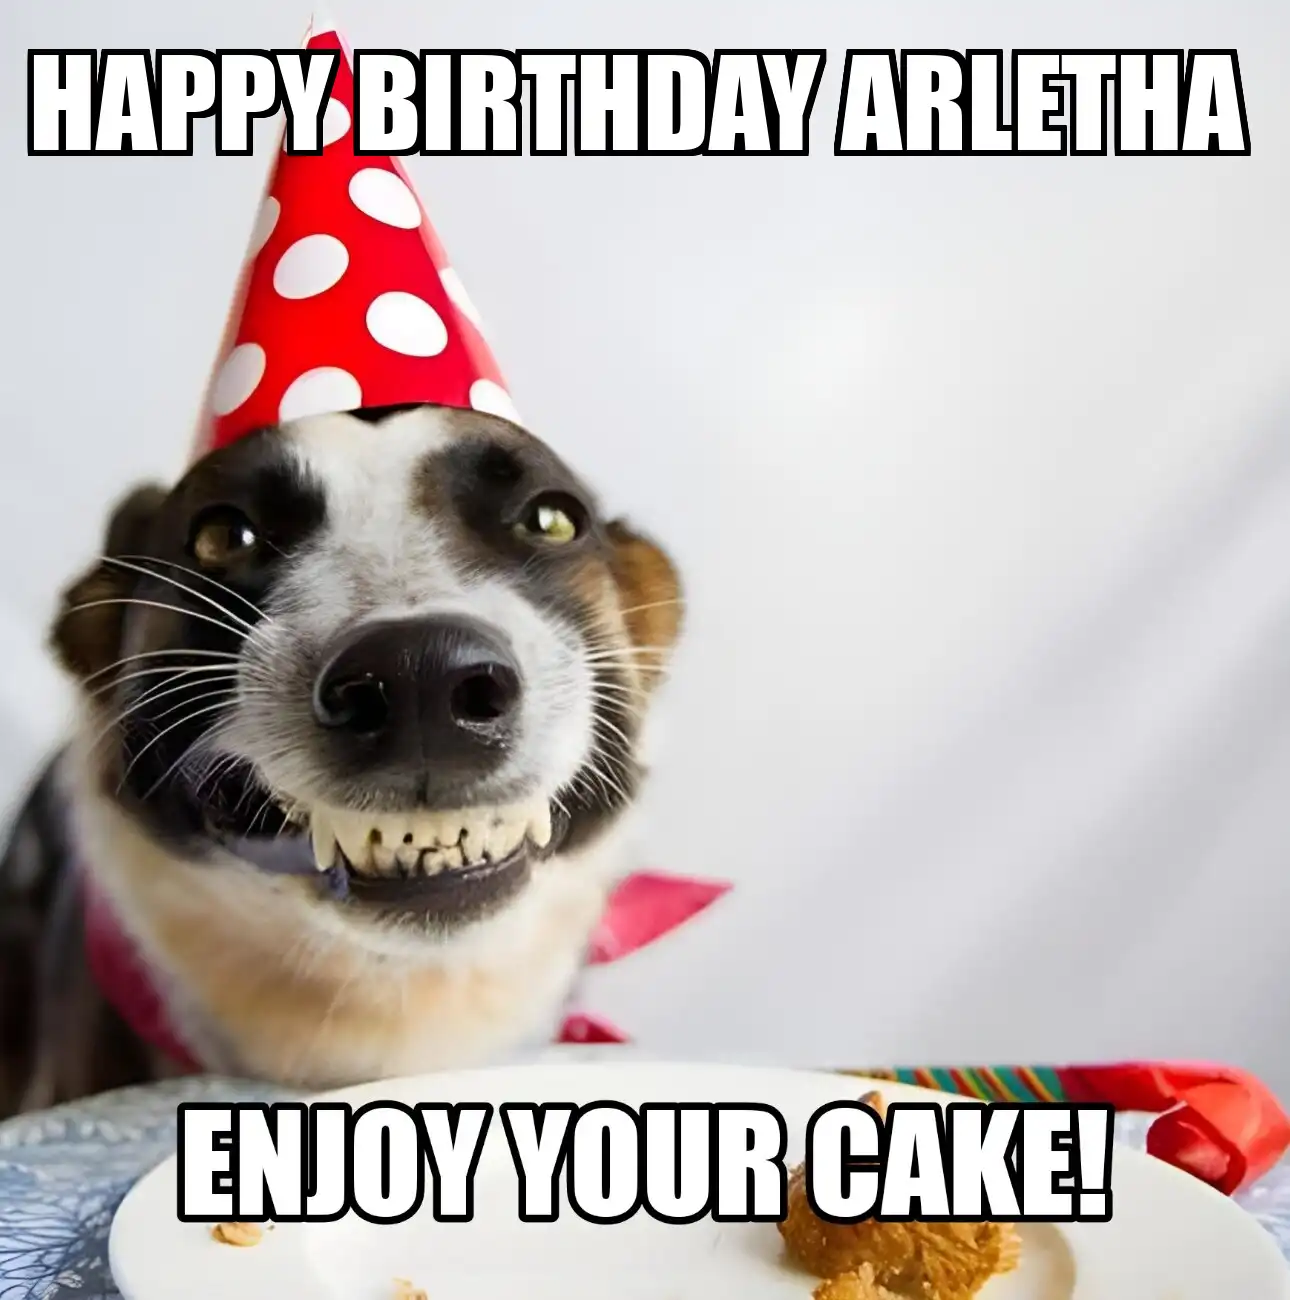 Happy Birthday Arletha Enjoy Your Cake Dog Meme